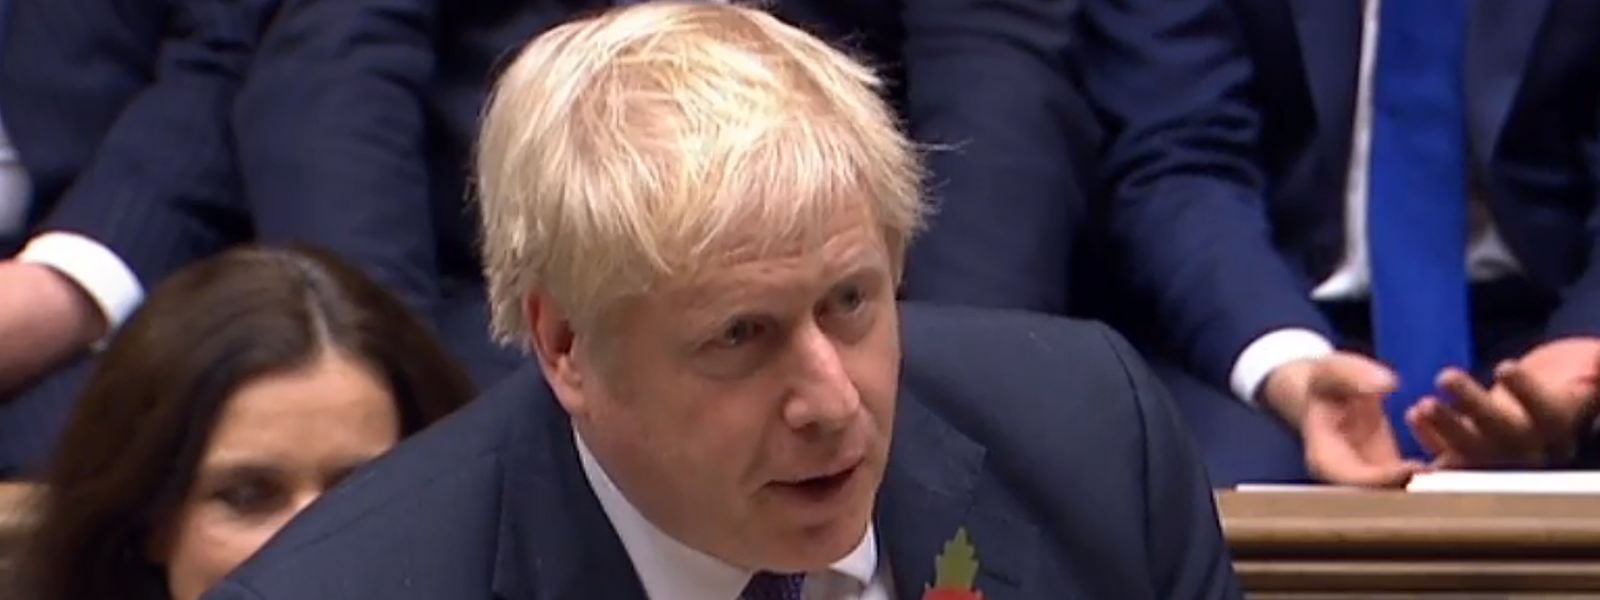 Le Premier ministre britannique Boris Johnson a demandé à l'Union européenne d'exclure un autre report du Brexit après le 31 janvier.